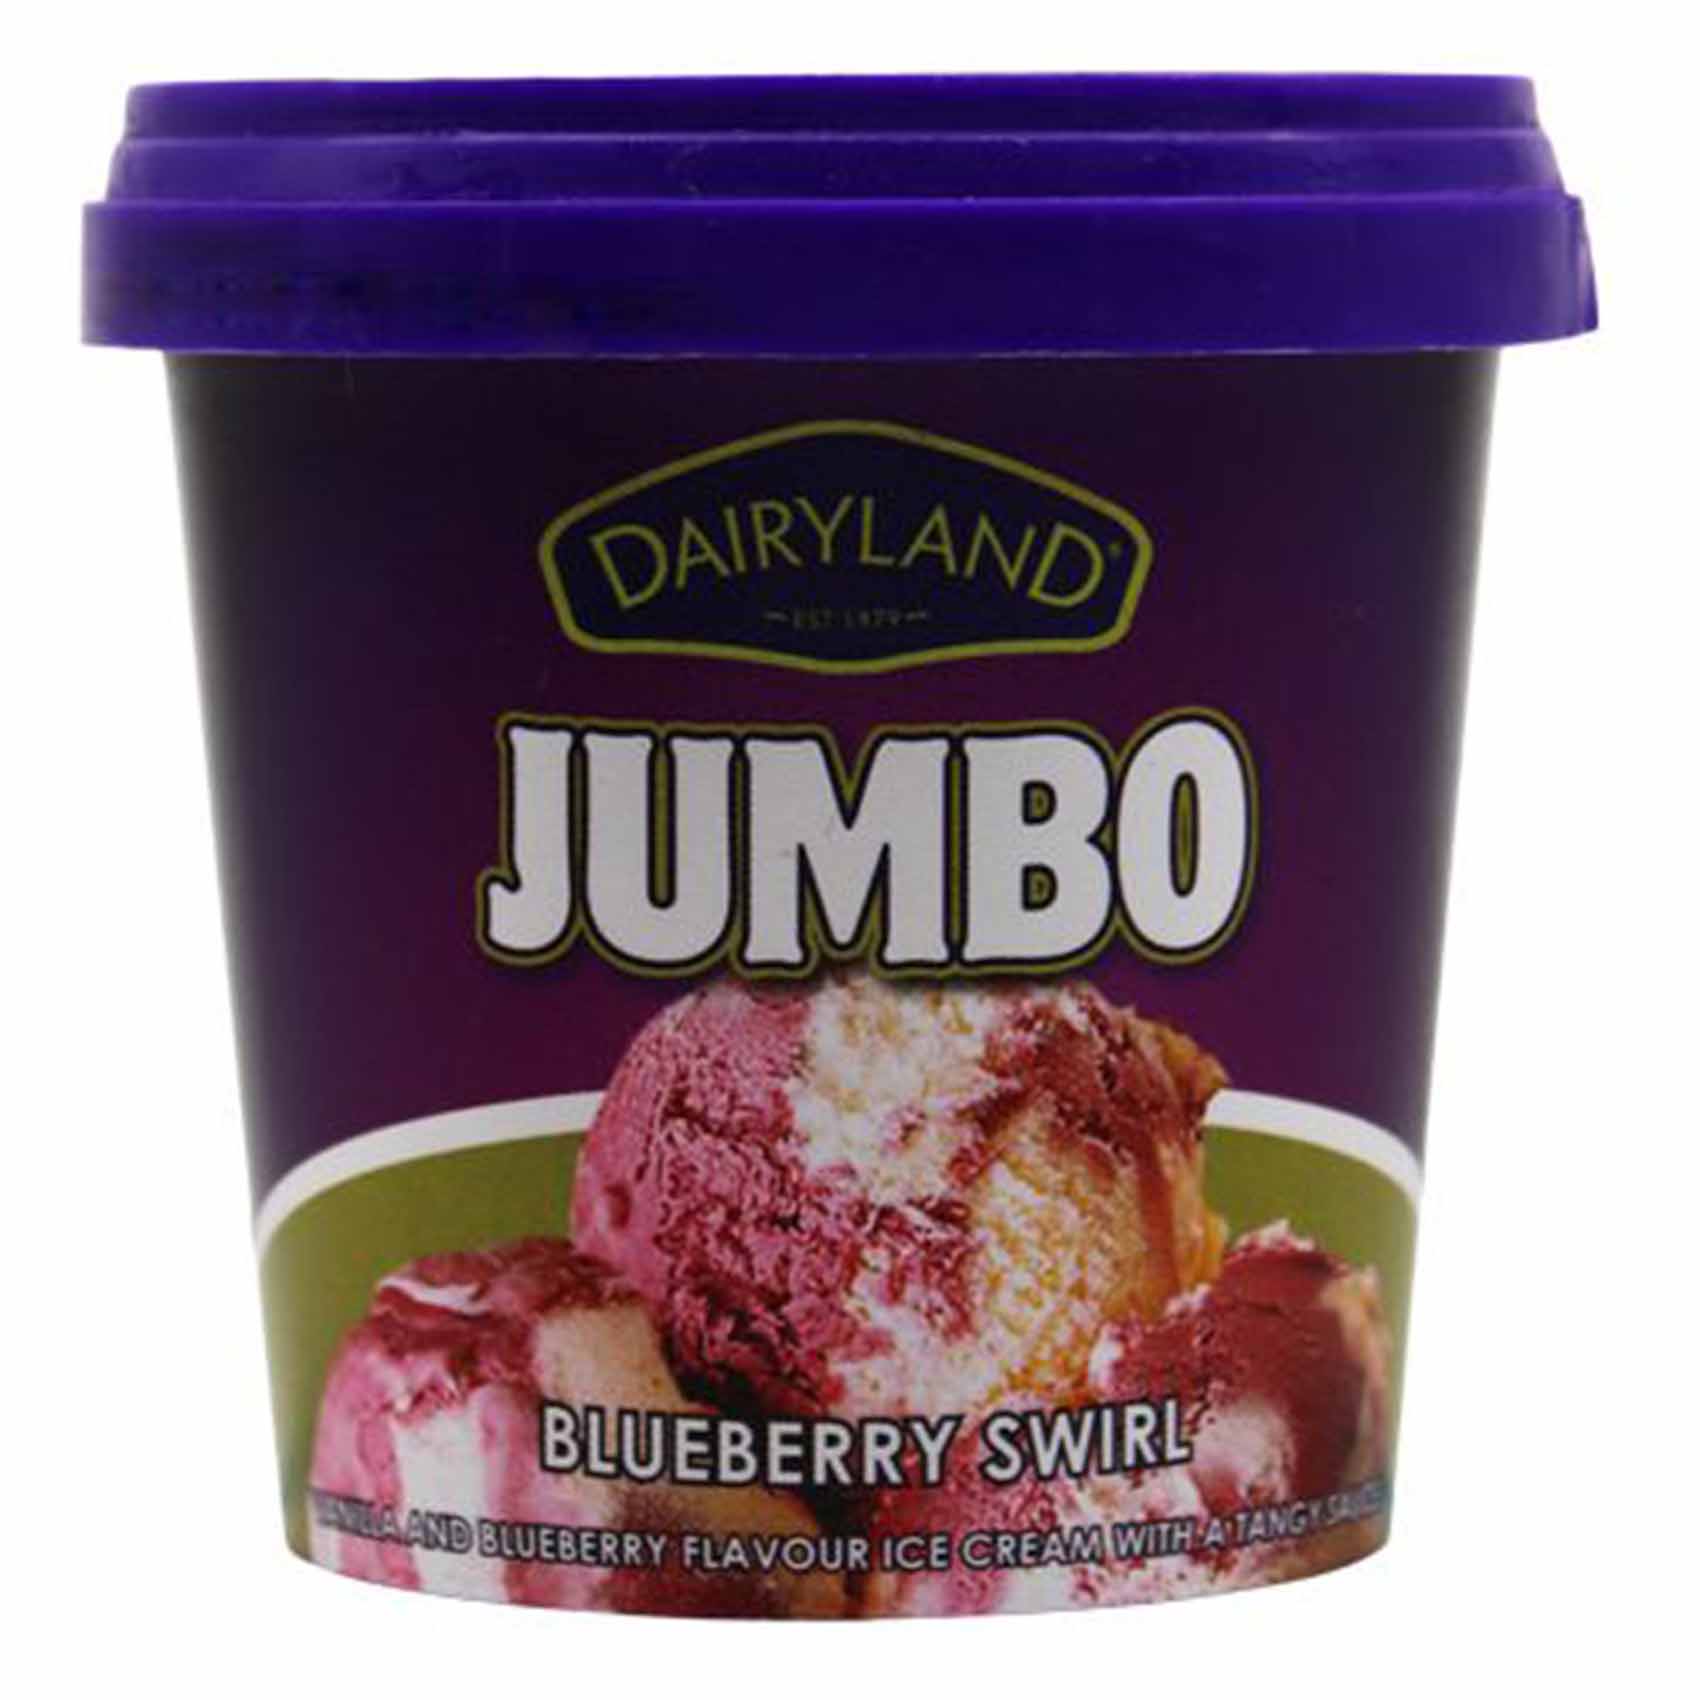 Dairyland Blueberry Swirl Ice Cream Jumbo 175ml